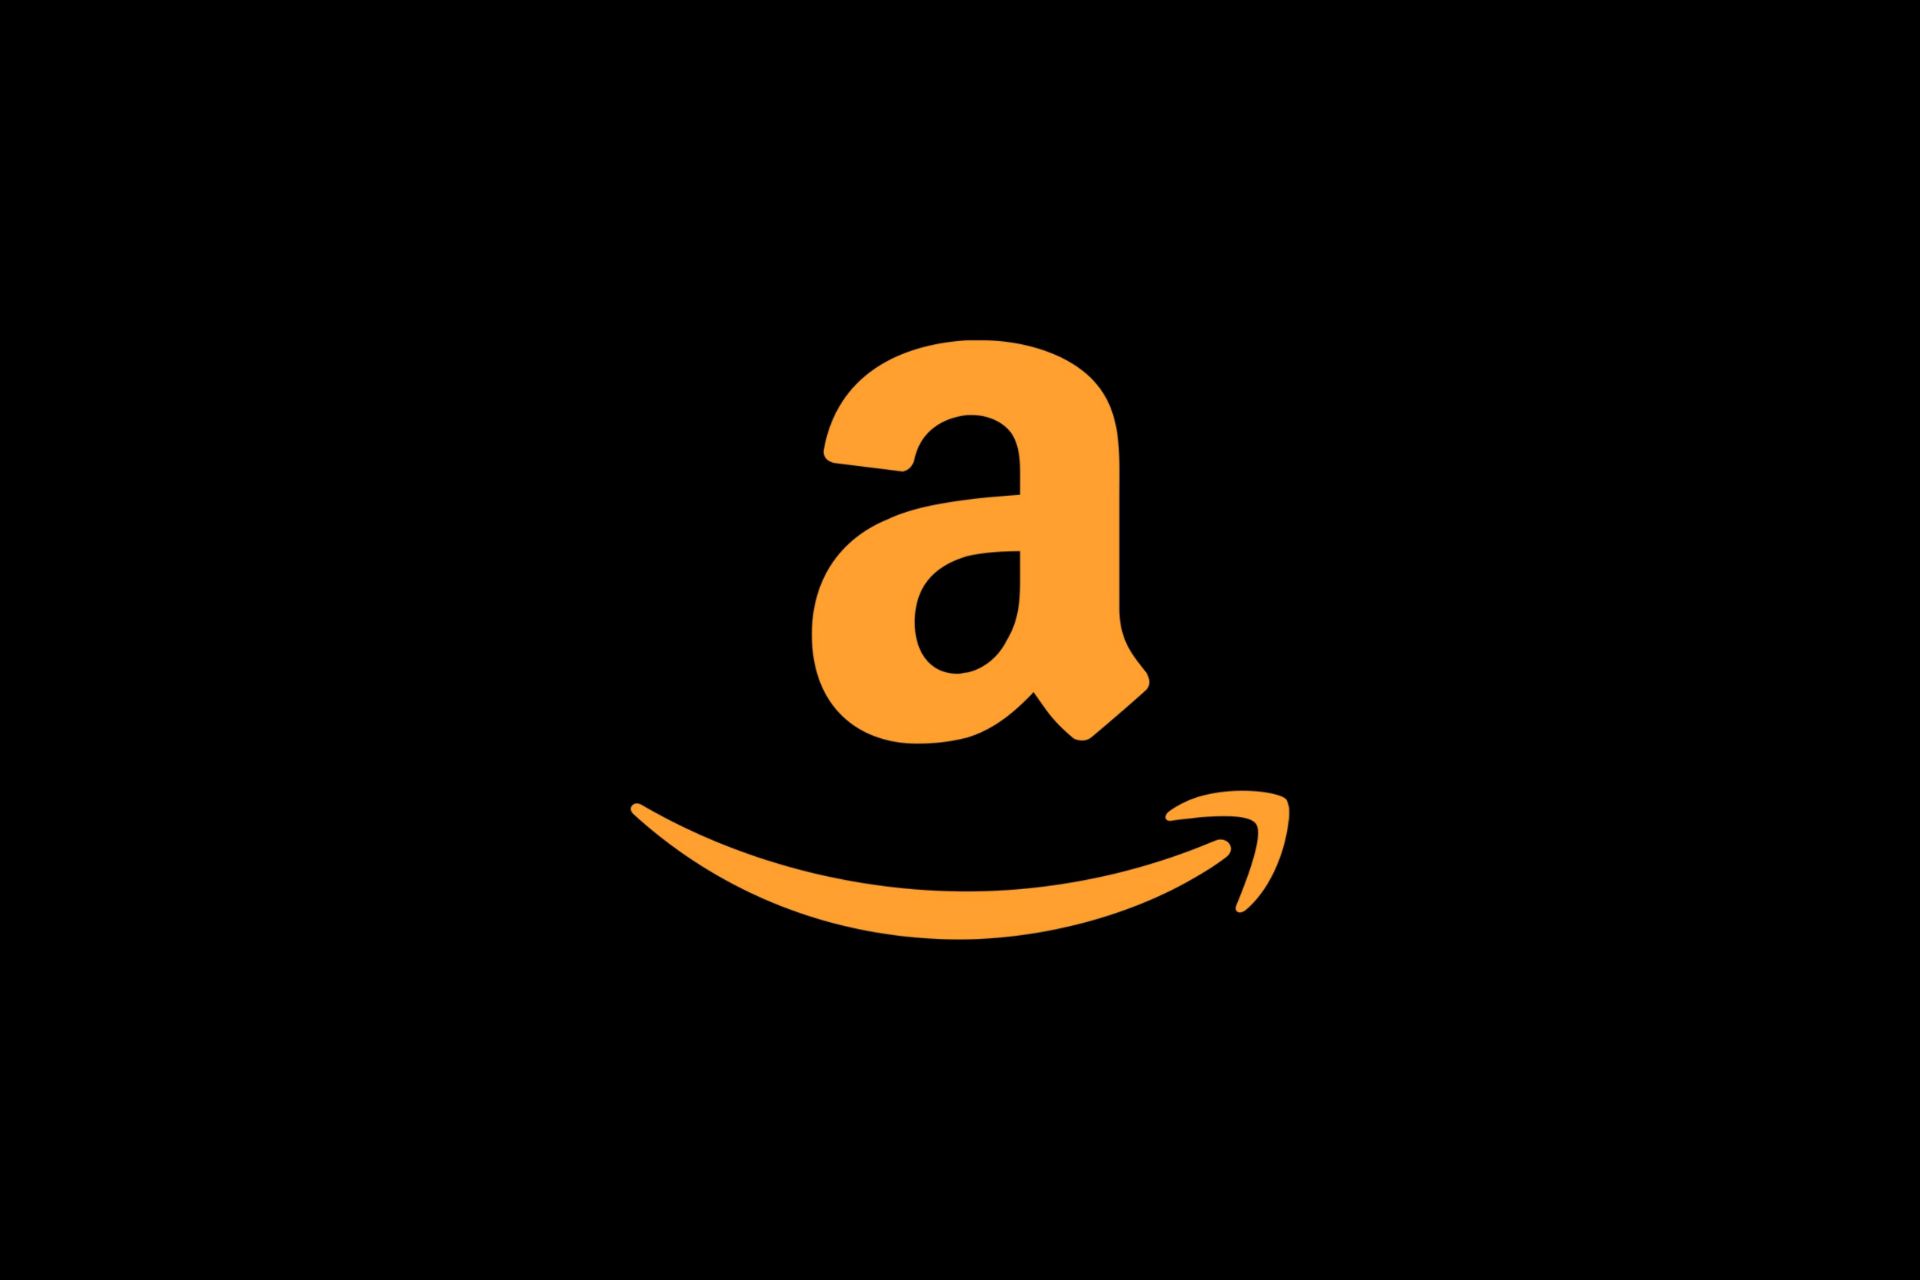 لوگو آمازون / Amazon رنگ طلایی